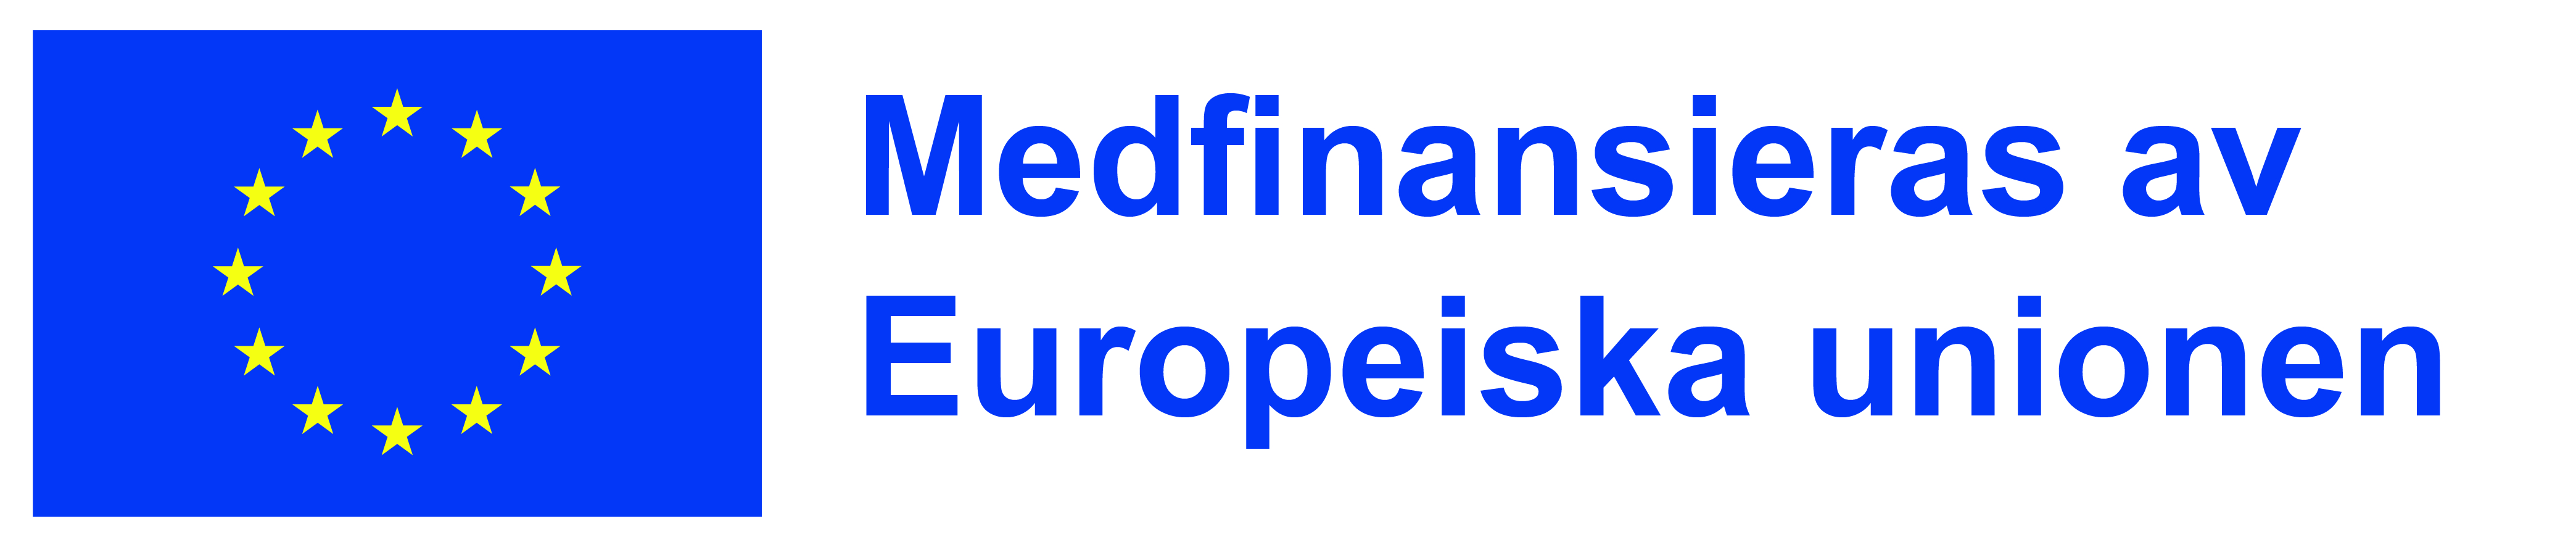 EU:s stjärnflagga och texten: Medfinansierat av Europeiska unionen.